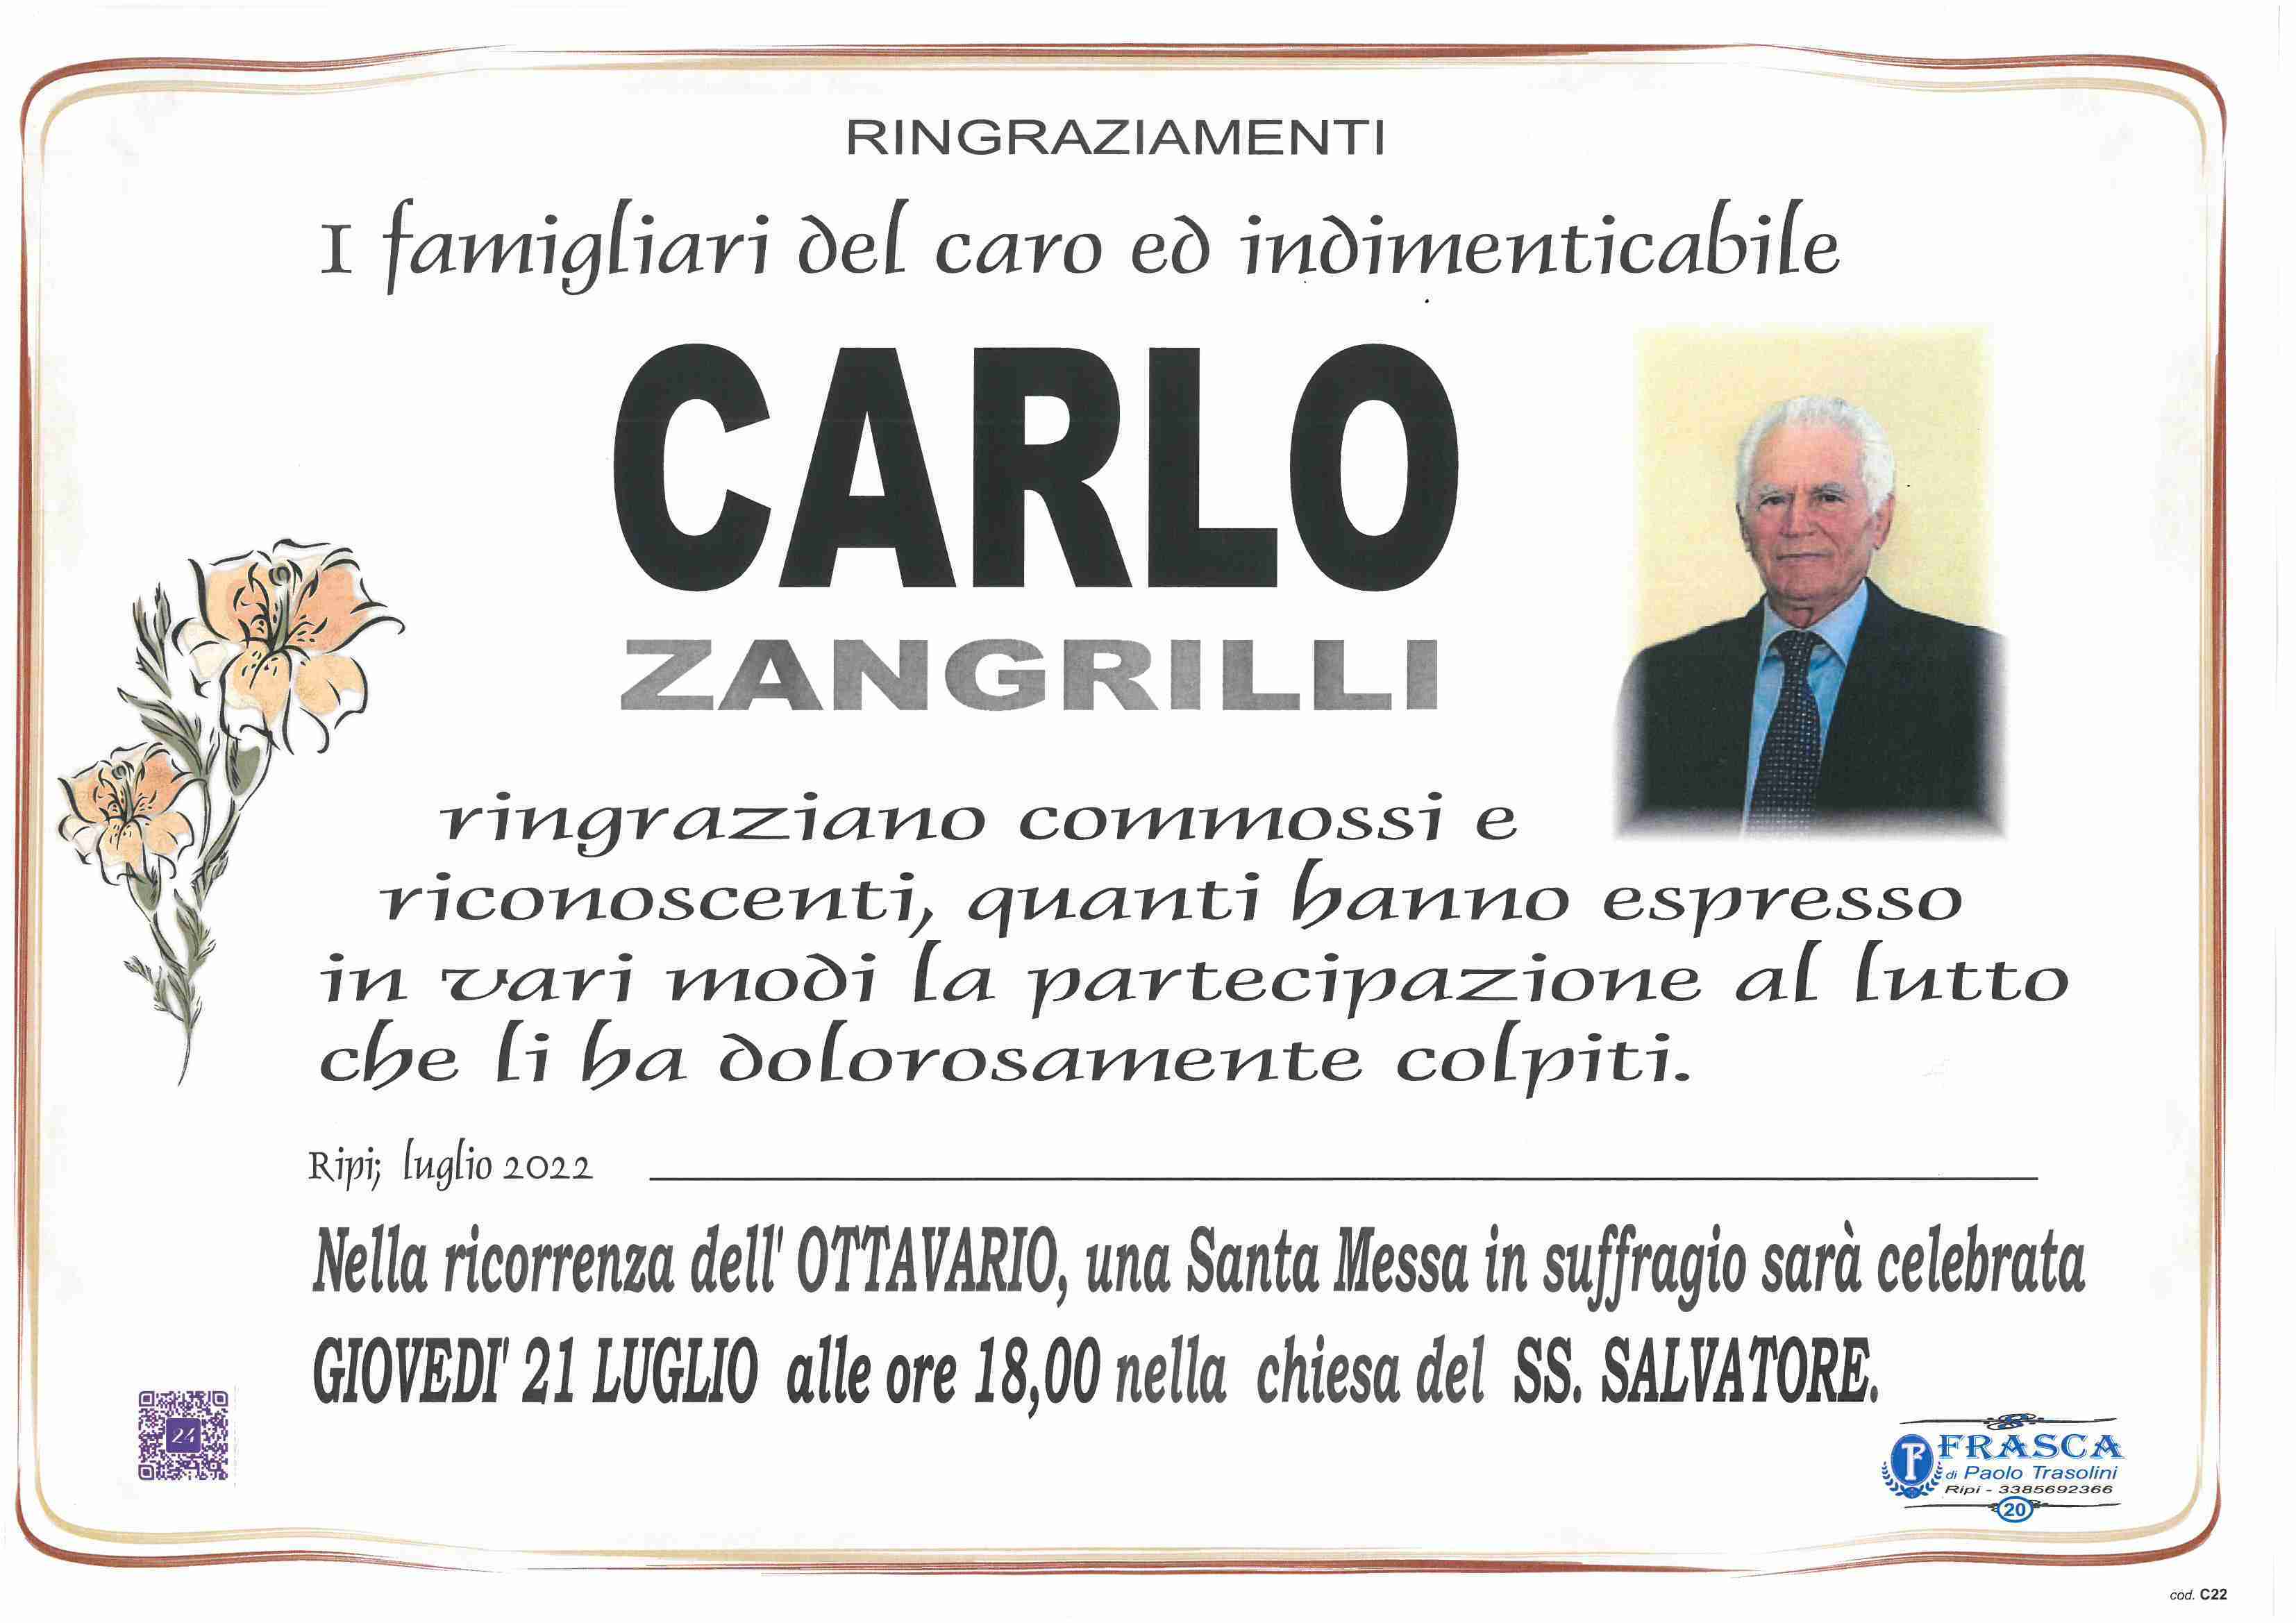 Carlo Zangrilli